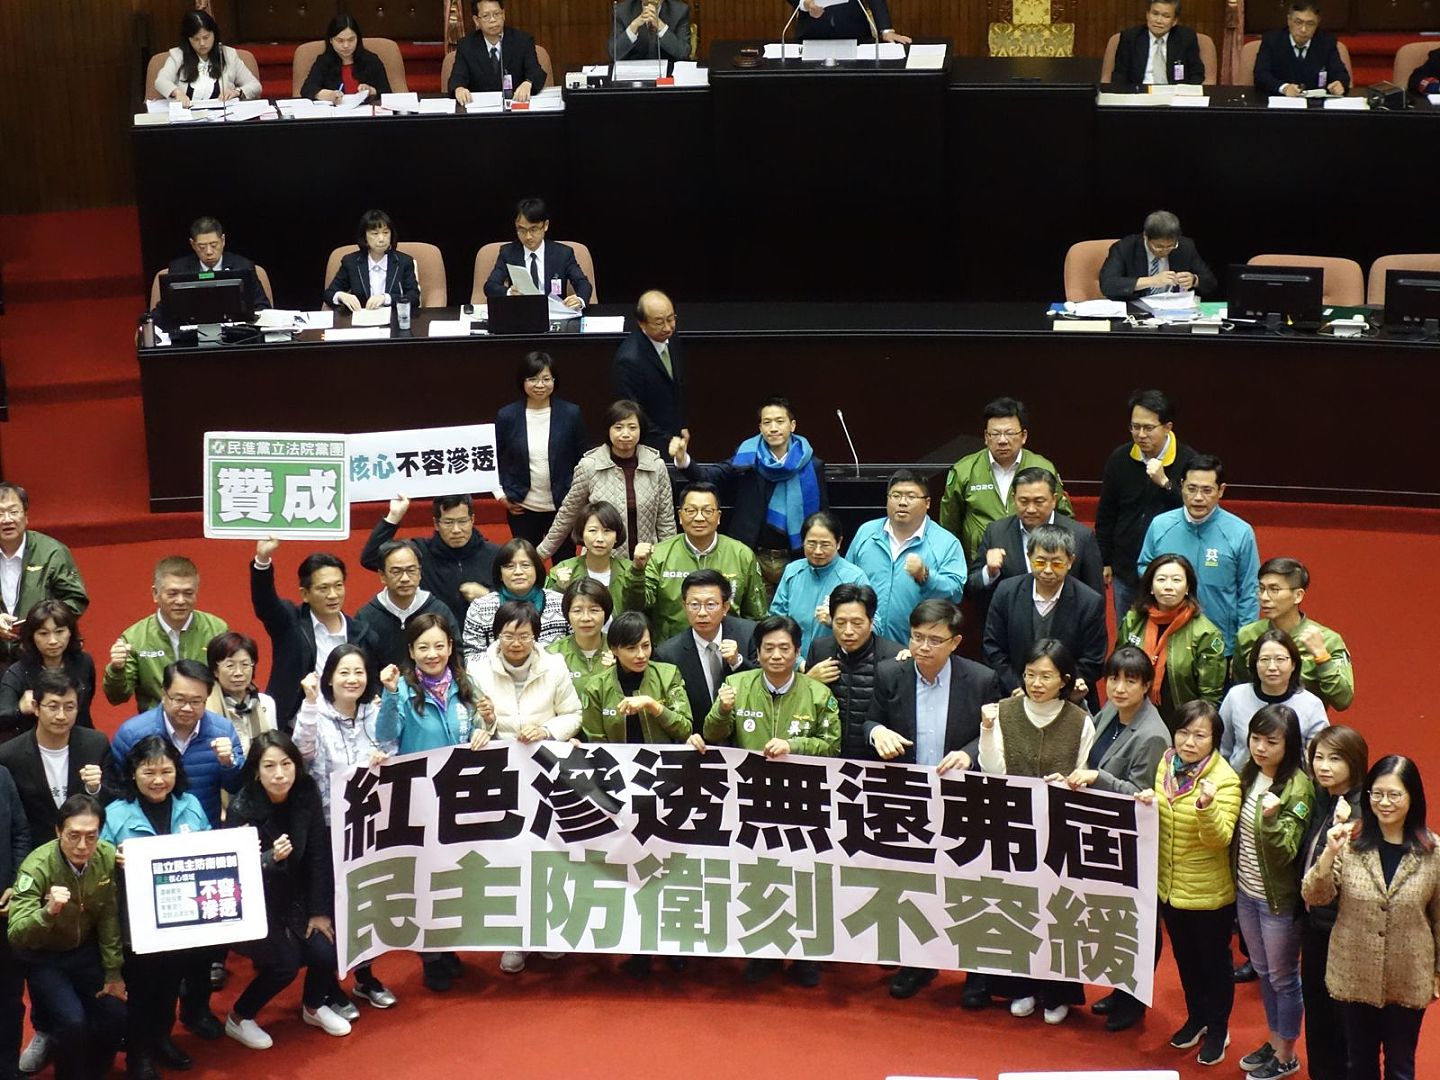 台湾立法院在2019年的最后一天通过《反渗透法》，对两岸交流加诸更多限制。（谭英瑛／多维新闻）